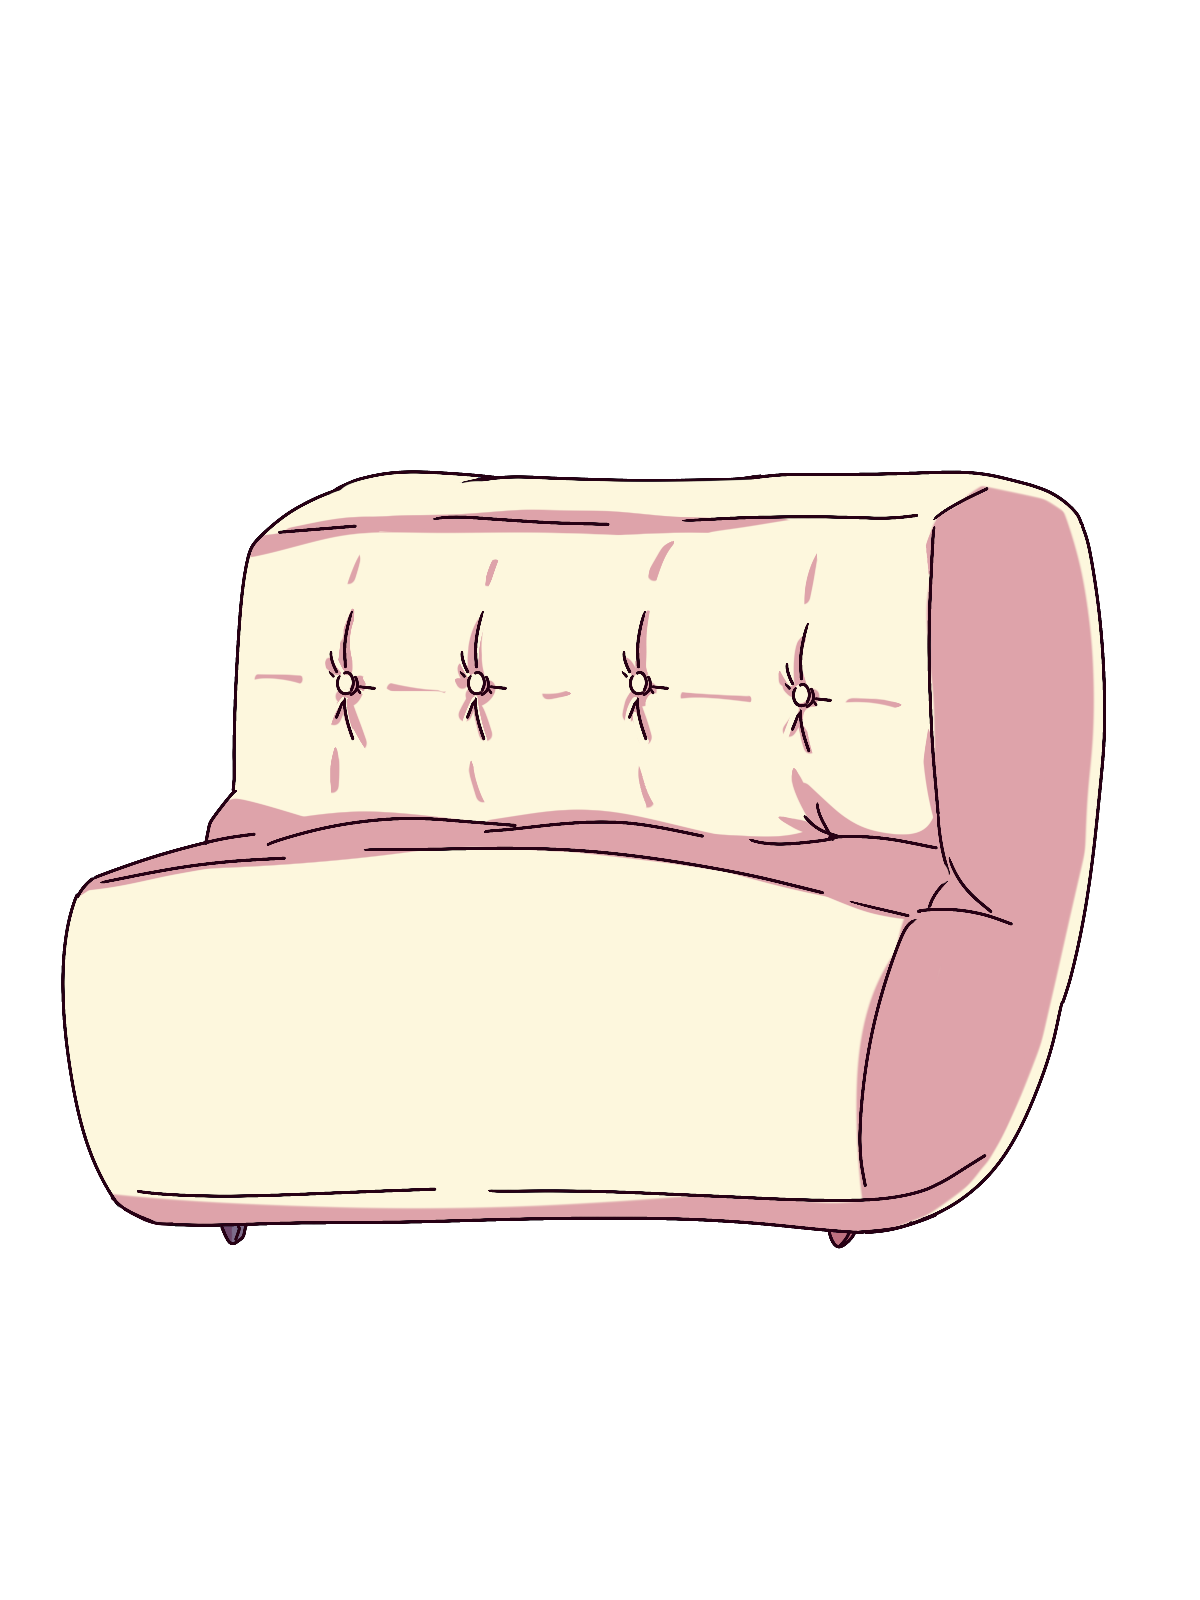 クリーム色のソファのイラスト